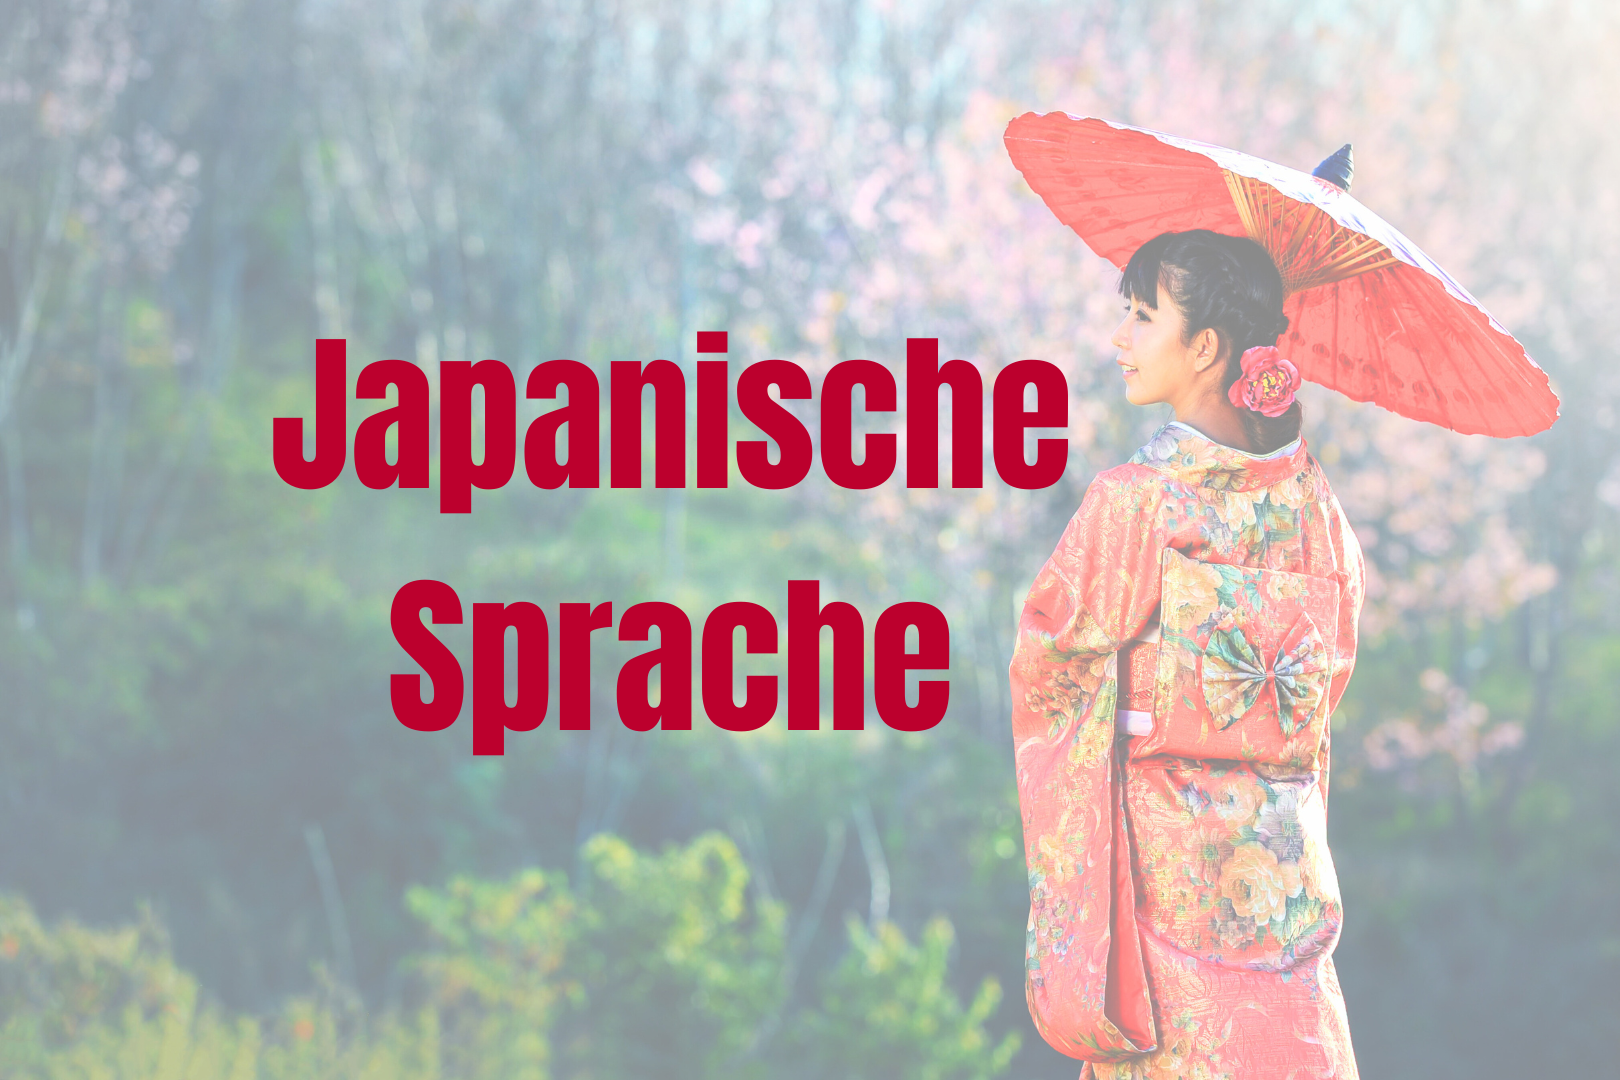 Japanerin mit rotem Sonnenschirm. Dafür in roter Schrift "Japanische Sprache"